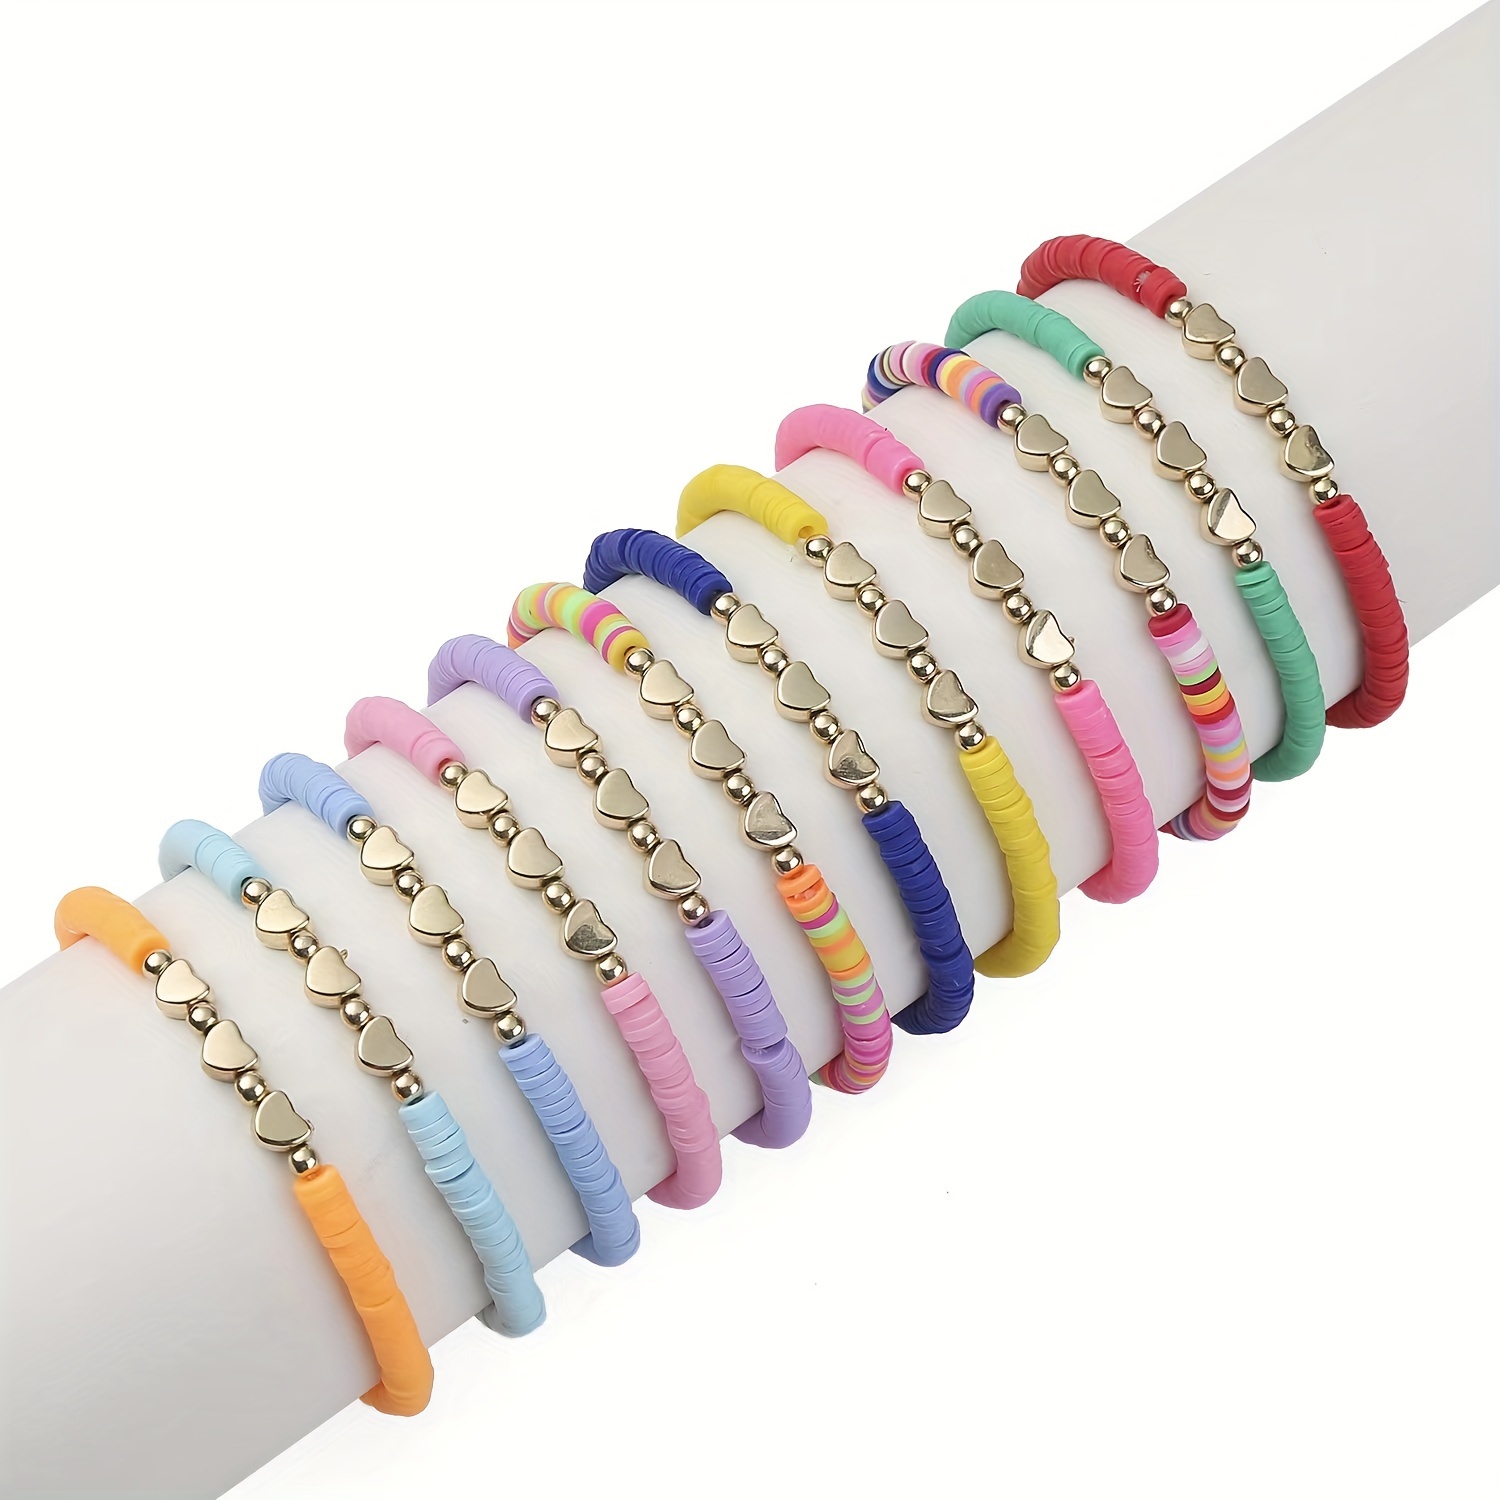 3 pulsera personalizada para niños Pulsera con nombre de unicornio